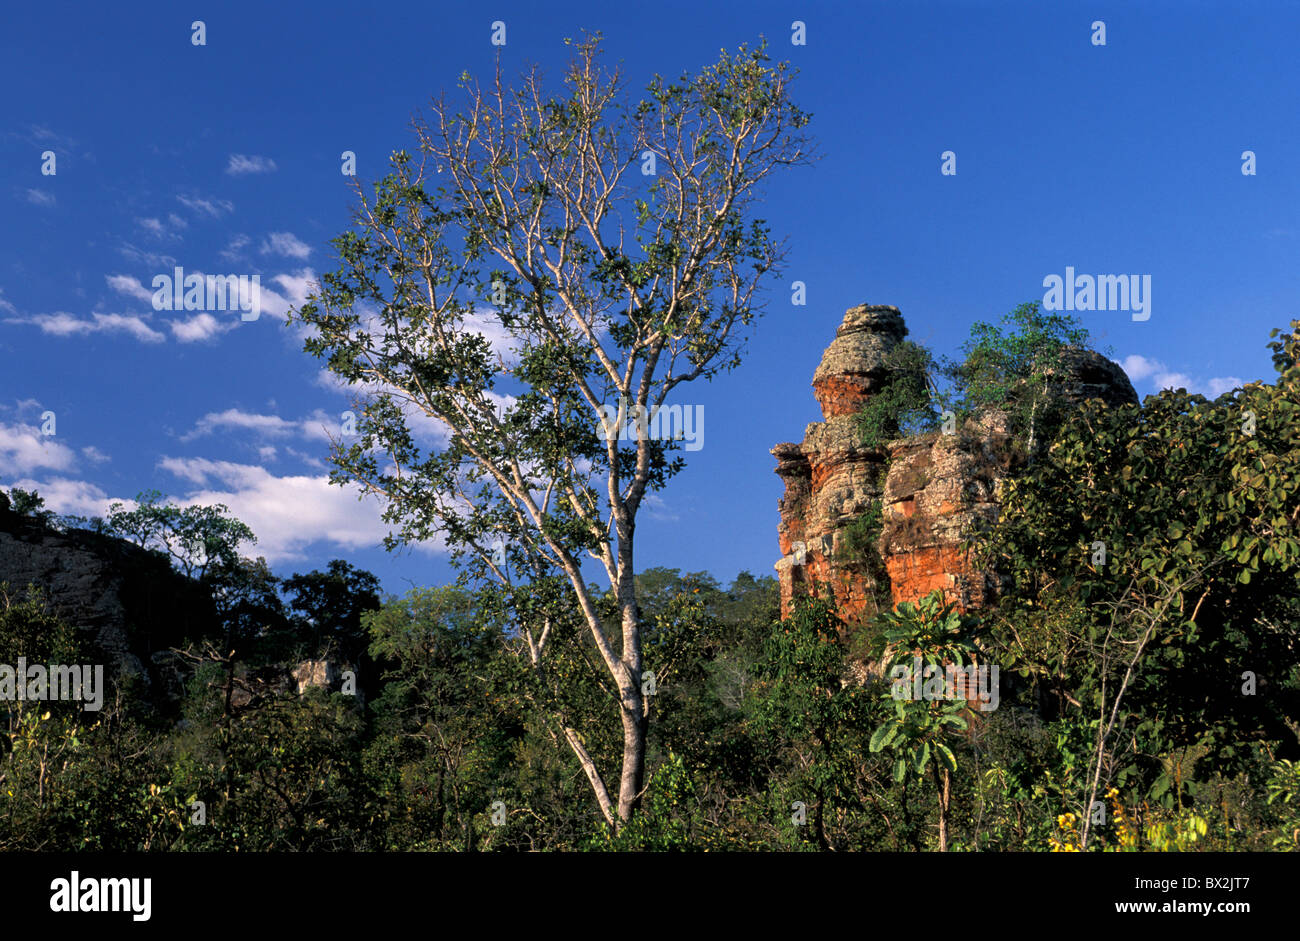 Rock Formations Chapada dos Guimares près de Cuiaba Mato Gross Brésil Amérique du Sud paysage Banque D'Images